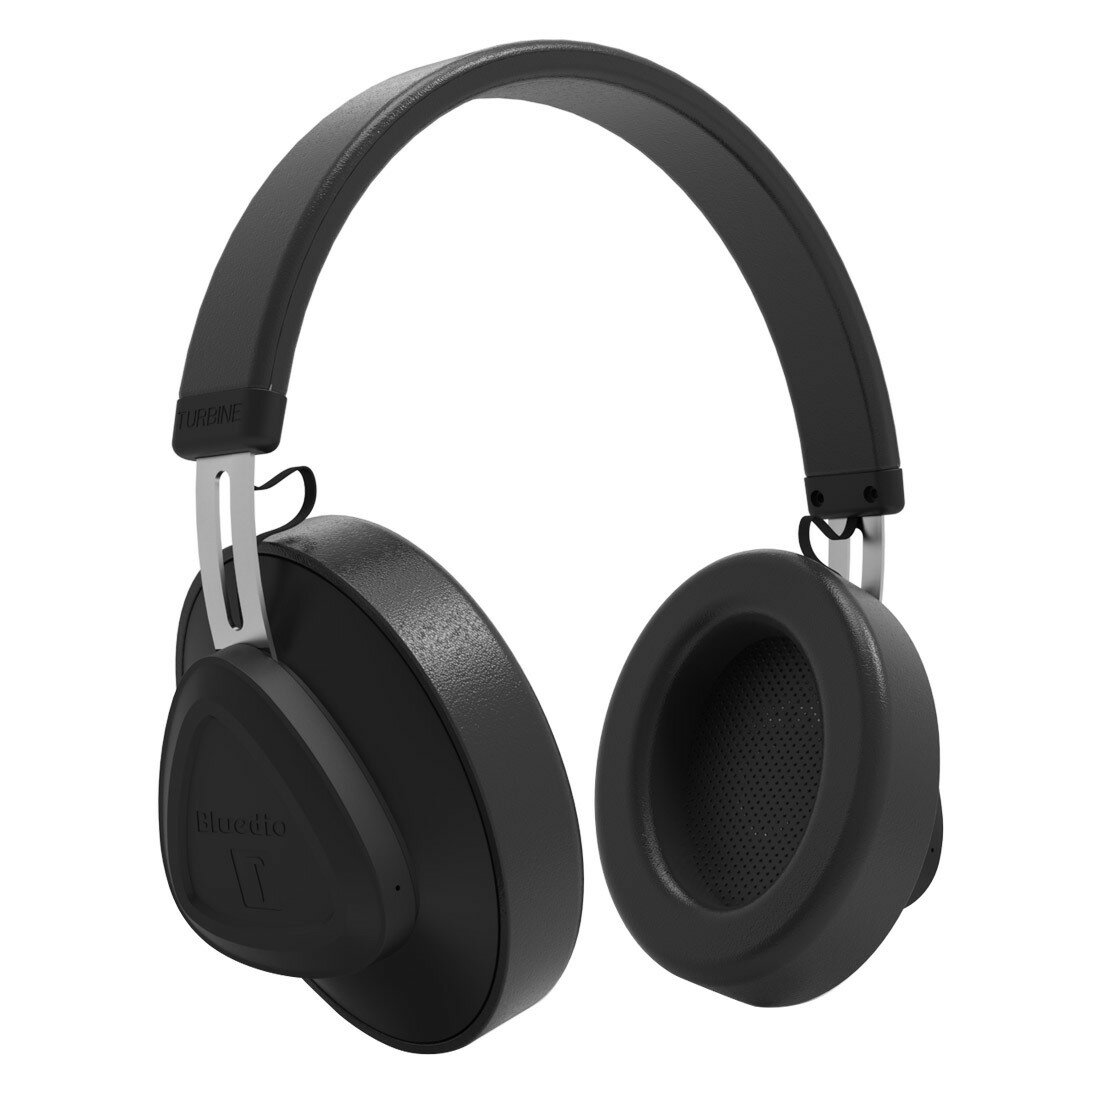 藍弦TM頭戴式藍牙耳機 5.0無線耳機 監聽級耳機 P9 max頭戴式耳機「限時特惠」